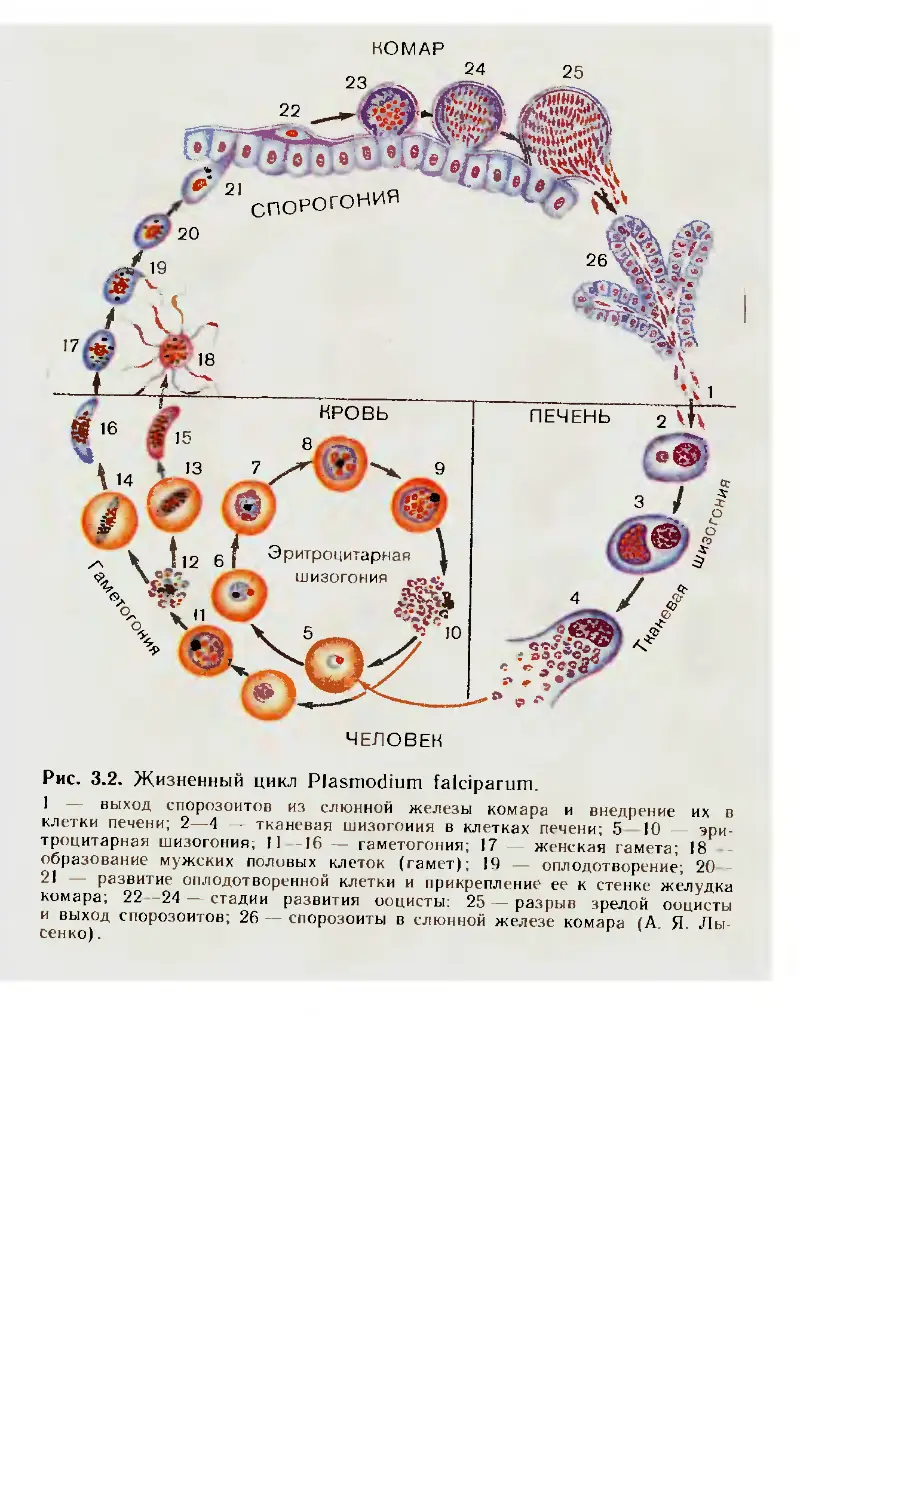 Хозяев в цикле развития малярийного плазмодия. Цикл развития малярийного плазмодия. Жизненный цикл Plasmodium Vivax схема. Цикл развития малярийного плазмодия схема кратко. Последовательность жизненного цикла малярийного плазмодия.